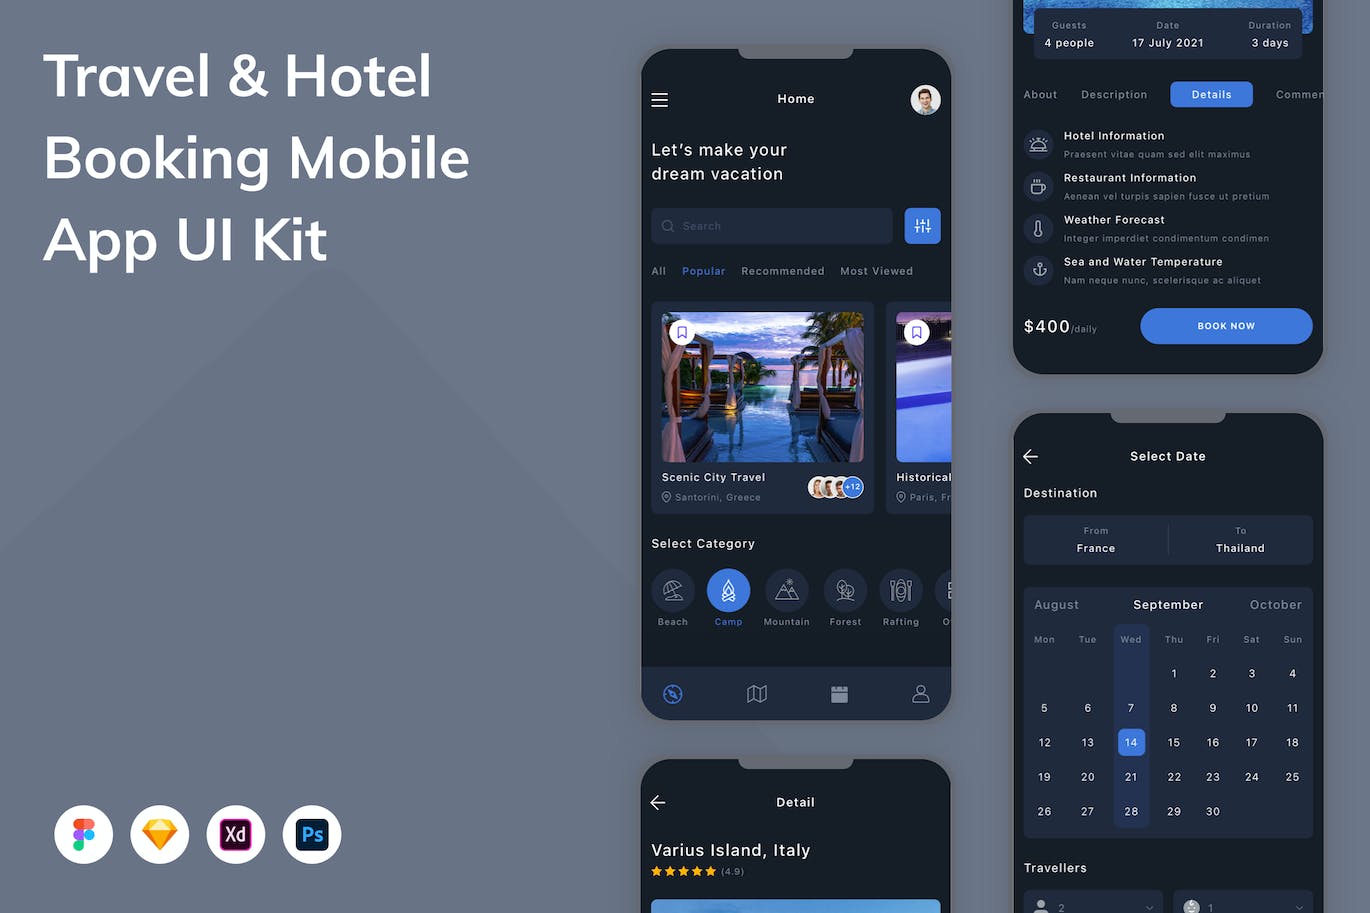 旅游和酒店预订App手机应用程序UI设计素材 Travel & Hotel Booking Mobile App UI Kit APP UI 第1张